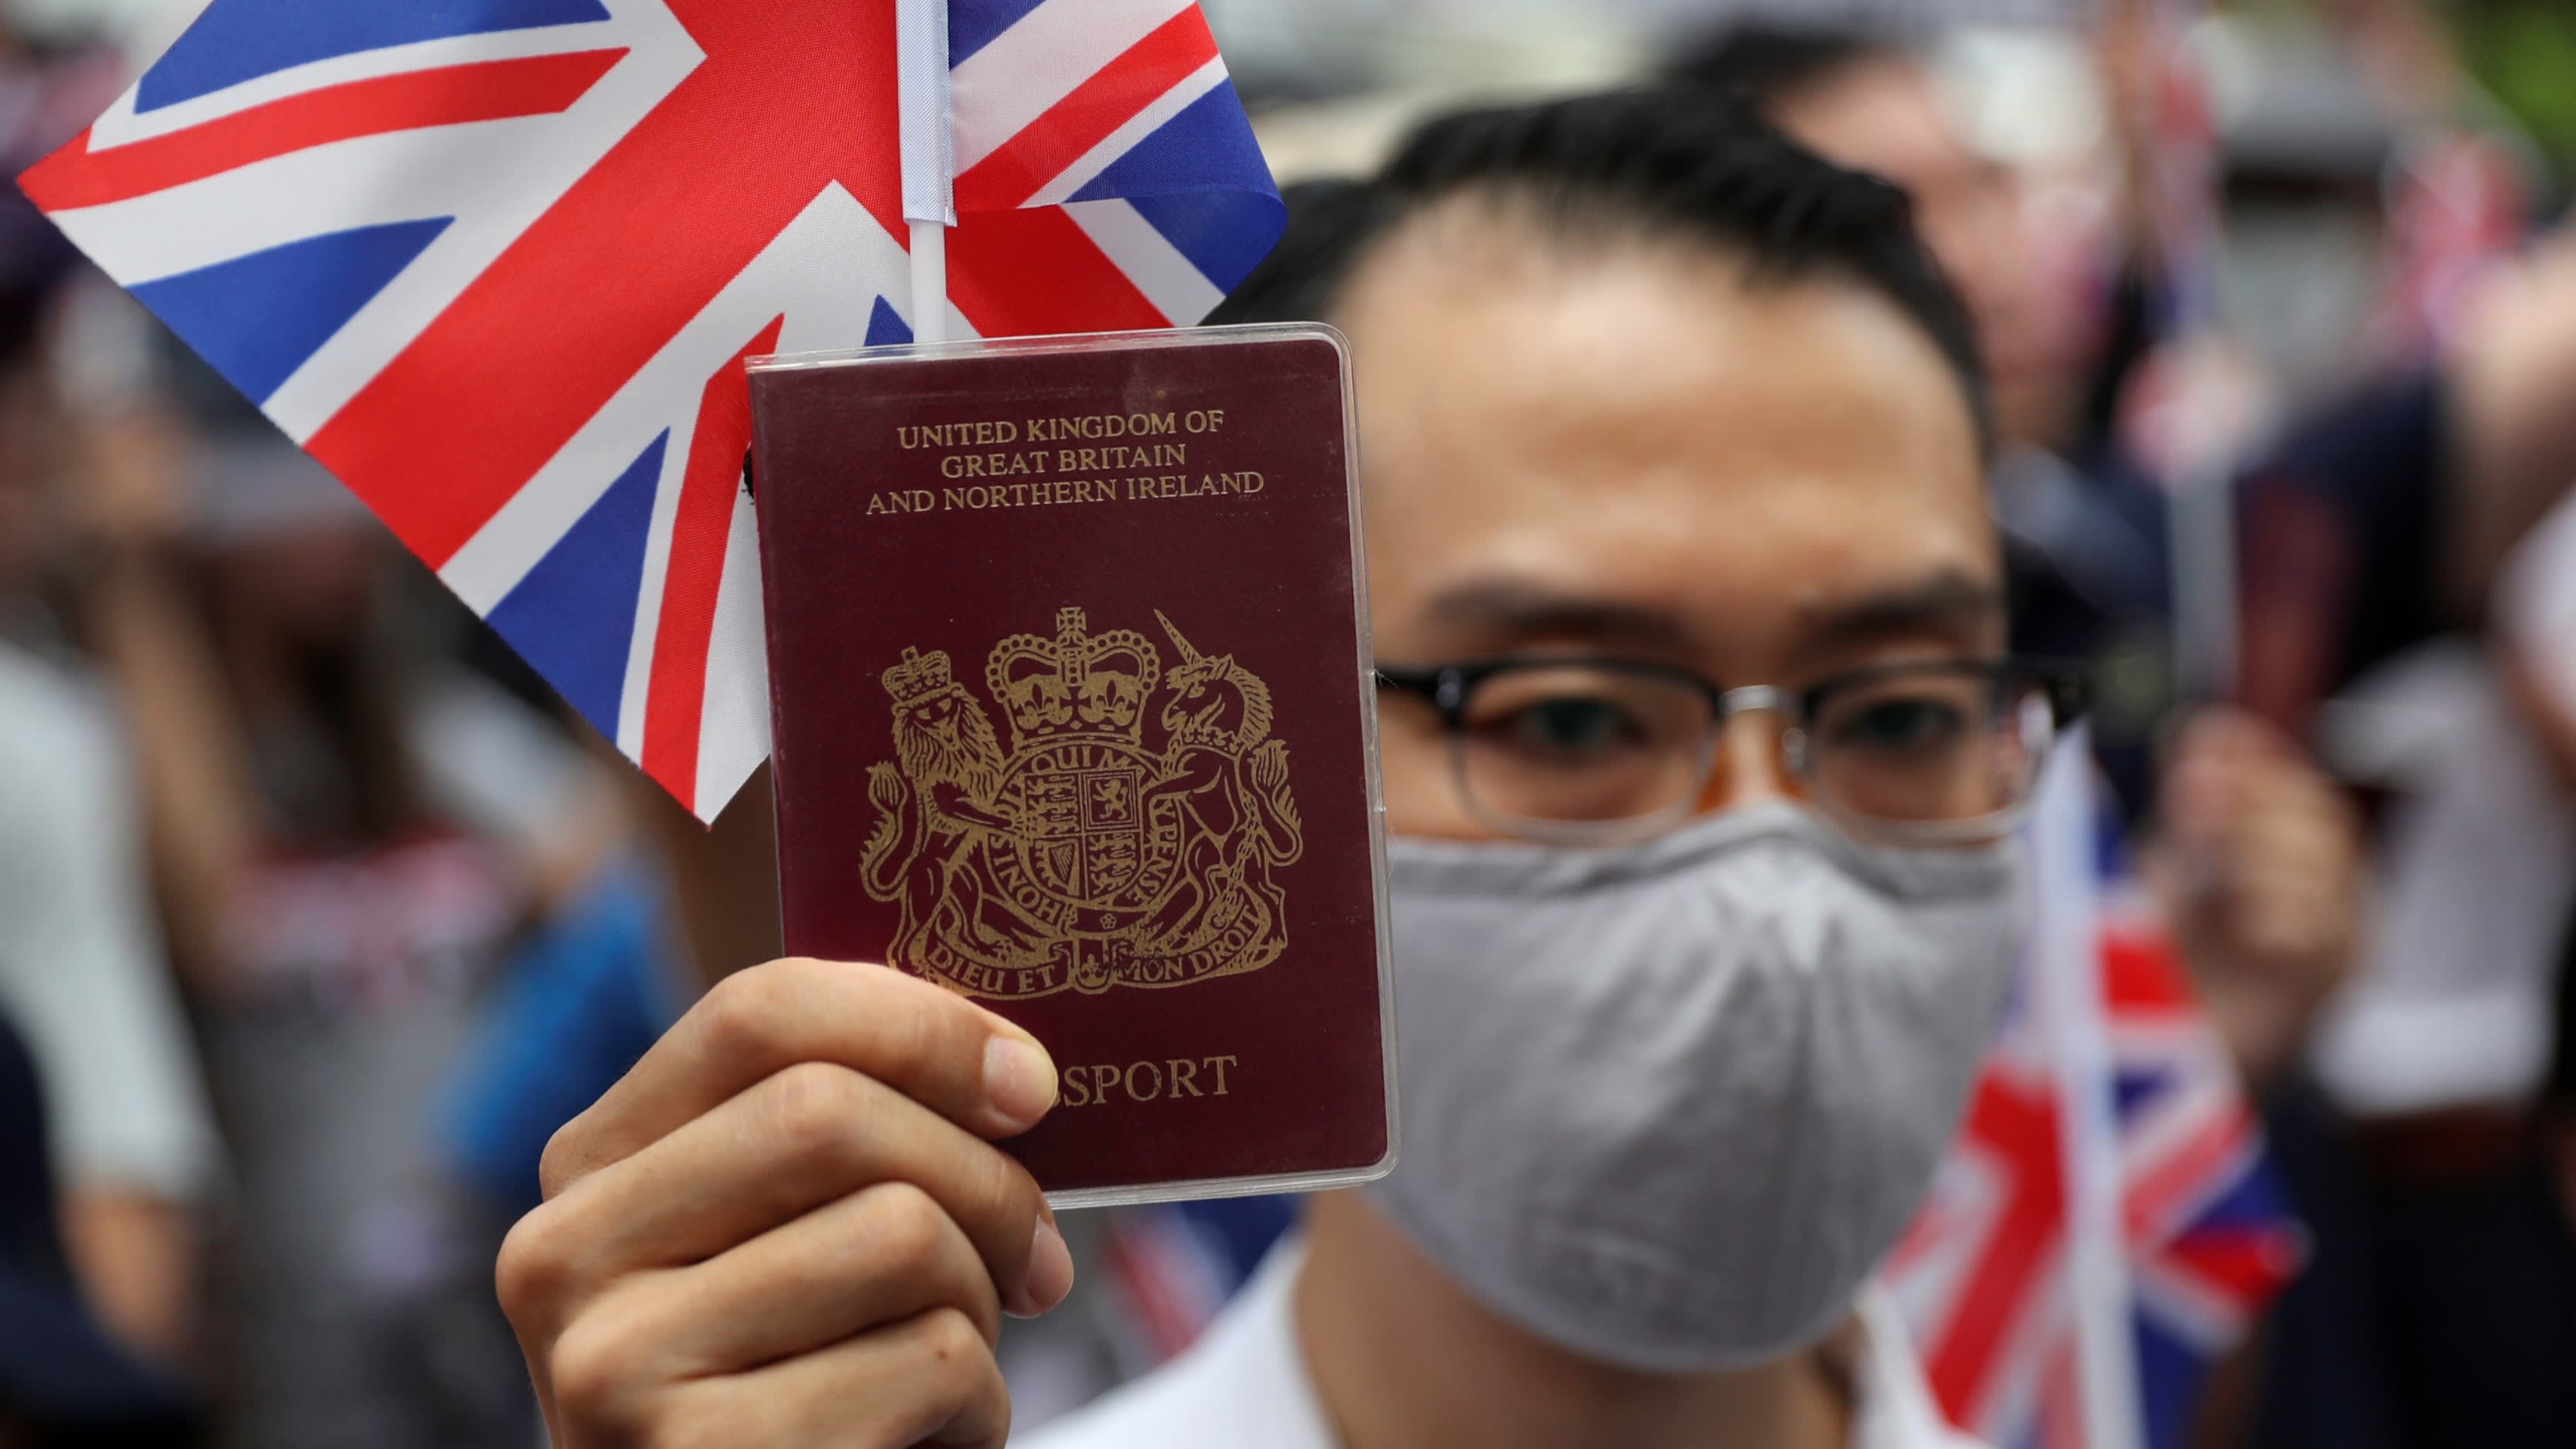 Căng thẳng đang diễn ra giữa Trung Quốc và Anh liên quan tới vấn đề Hong Kong. Ảnh: Reuters